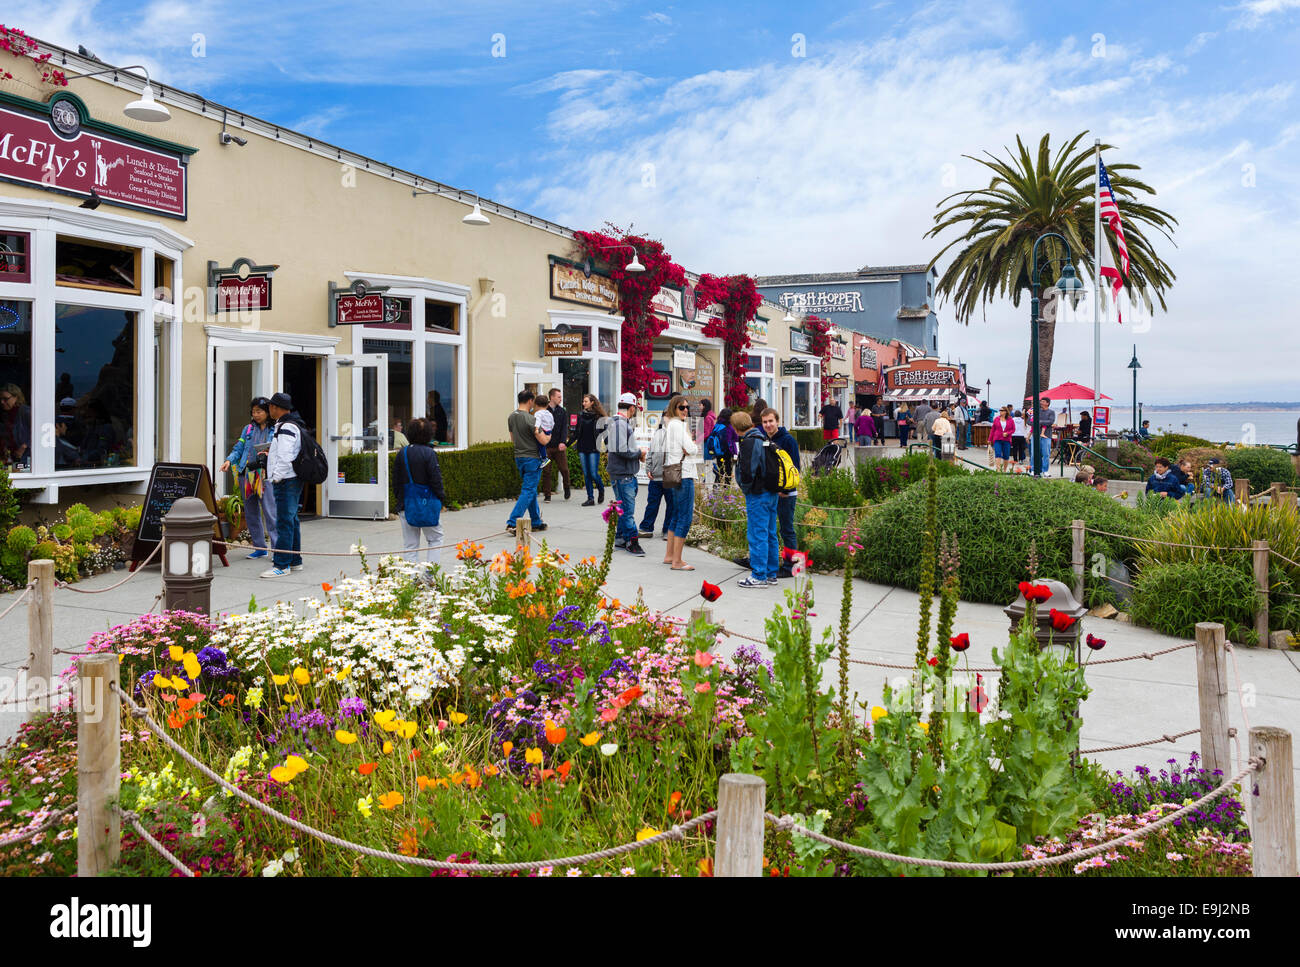 Ristoranti e negozi in Steinbeck Plaza, Cannery Row, Monterey, California, Stati Uniti d'America Foto Stock